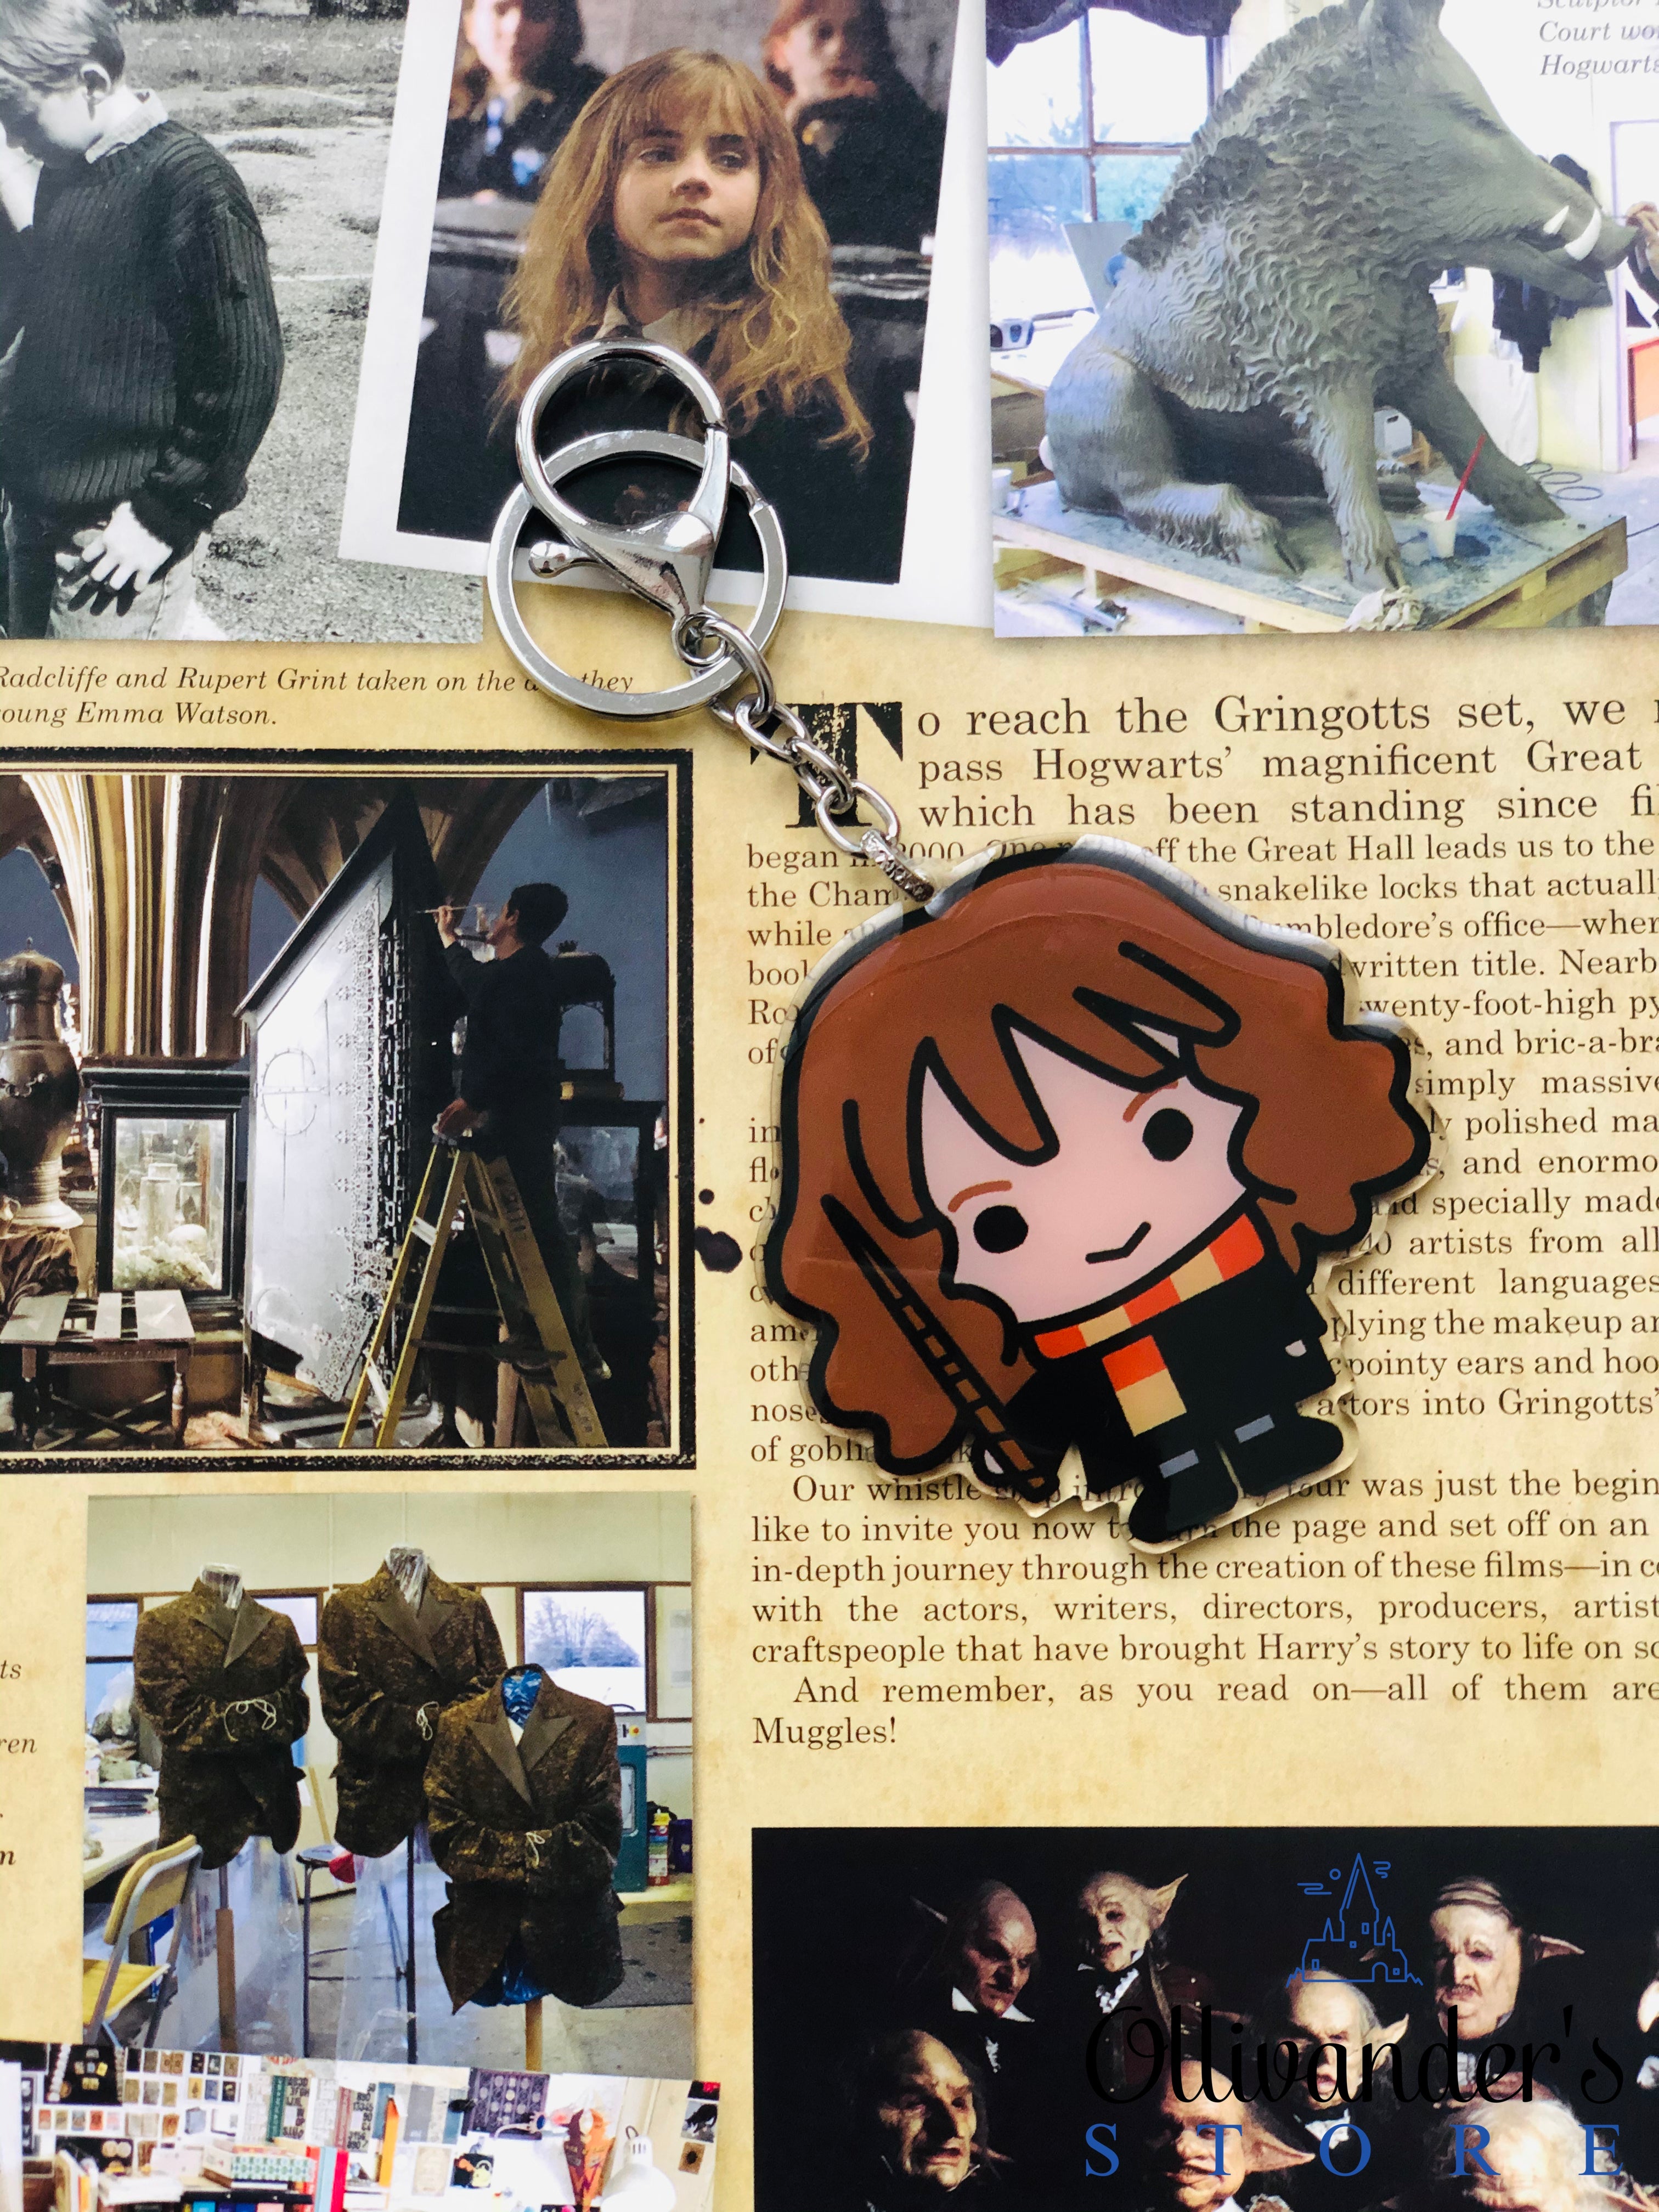 Acrylic keychain of Hermione